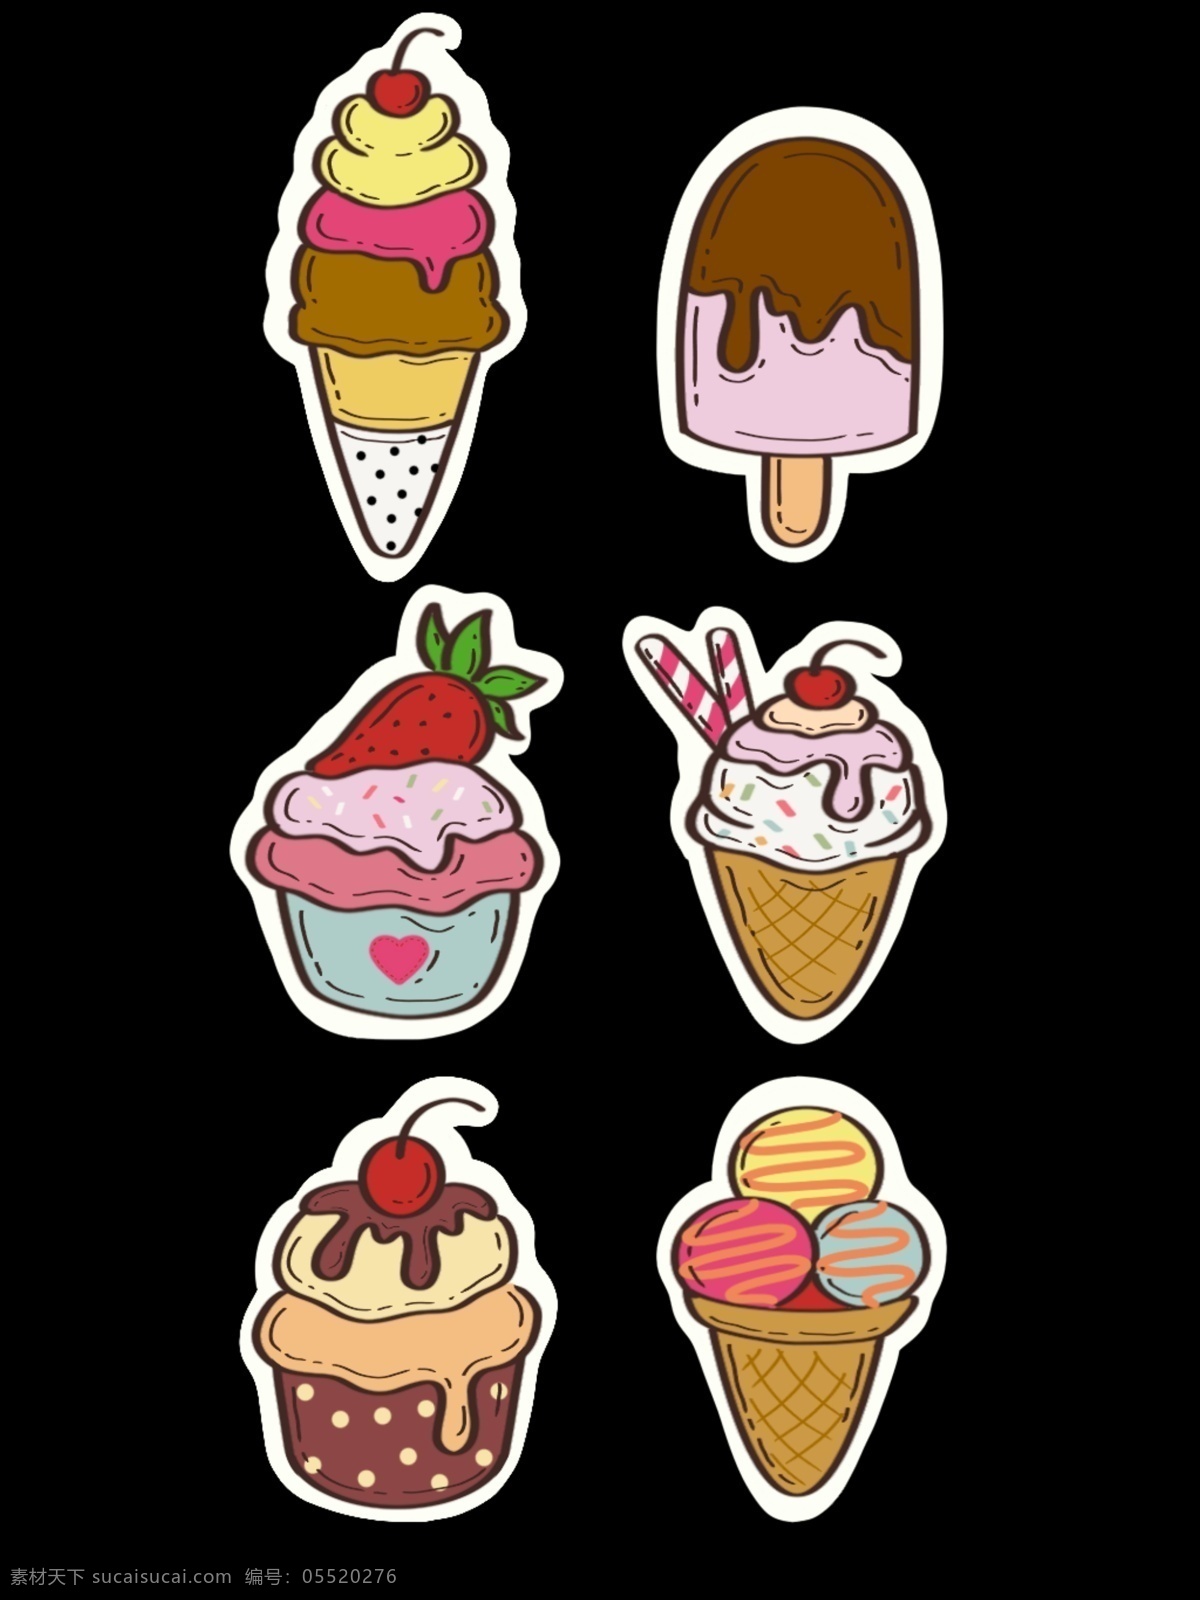 可爱 卡通 冰淇淋 雪糕 贴纸 彩色 卡通手绘 冷饮 食物 线条 花纹 amp 背景 免 抠 图 底纹边框 其他素材